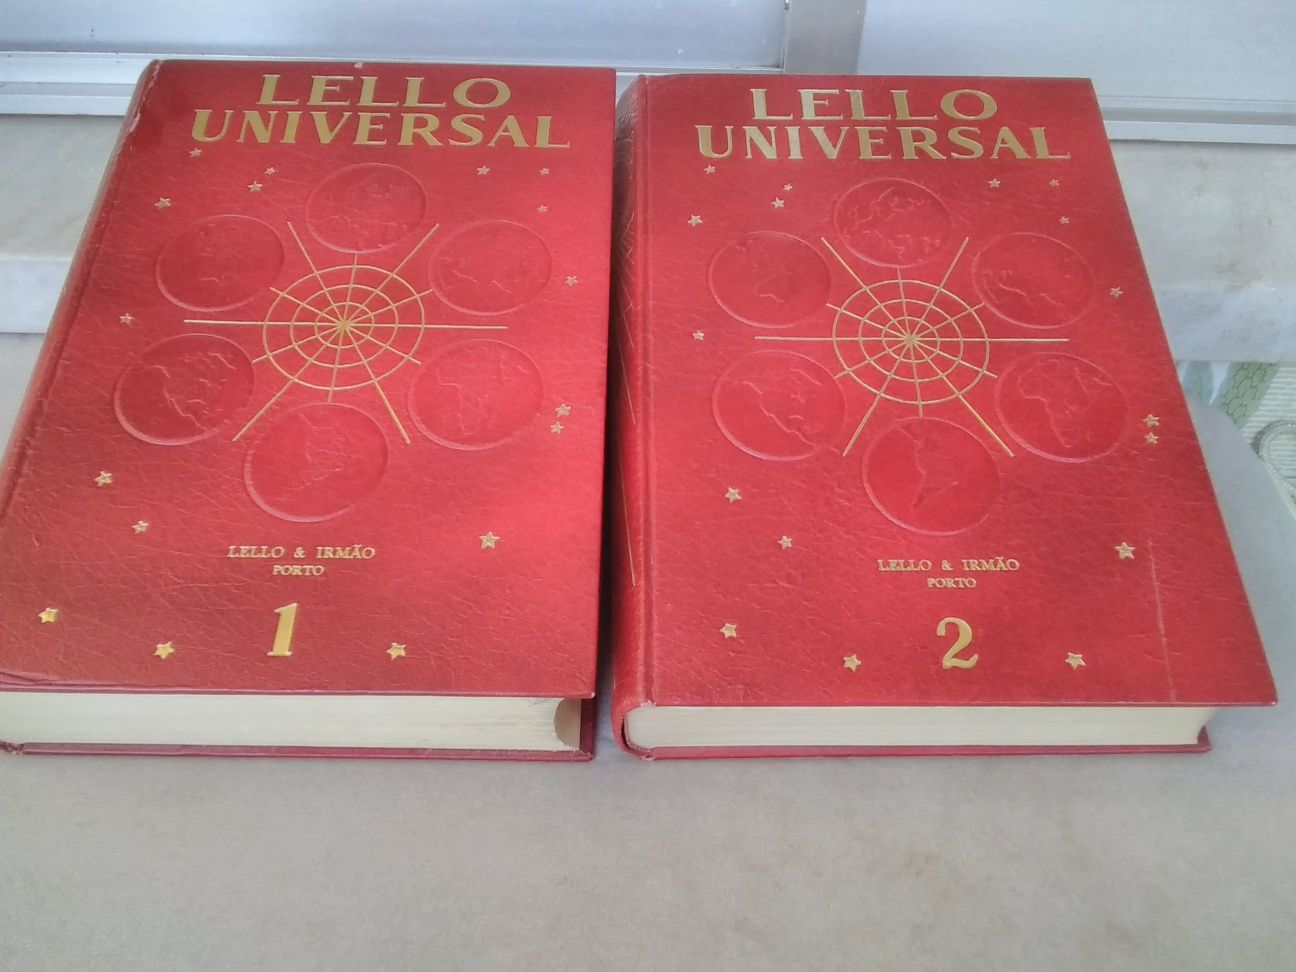 Dois dicionários da Lello Universal